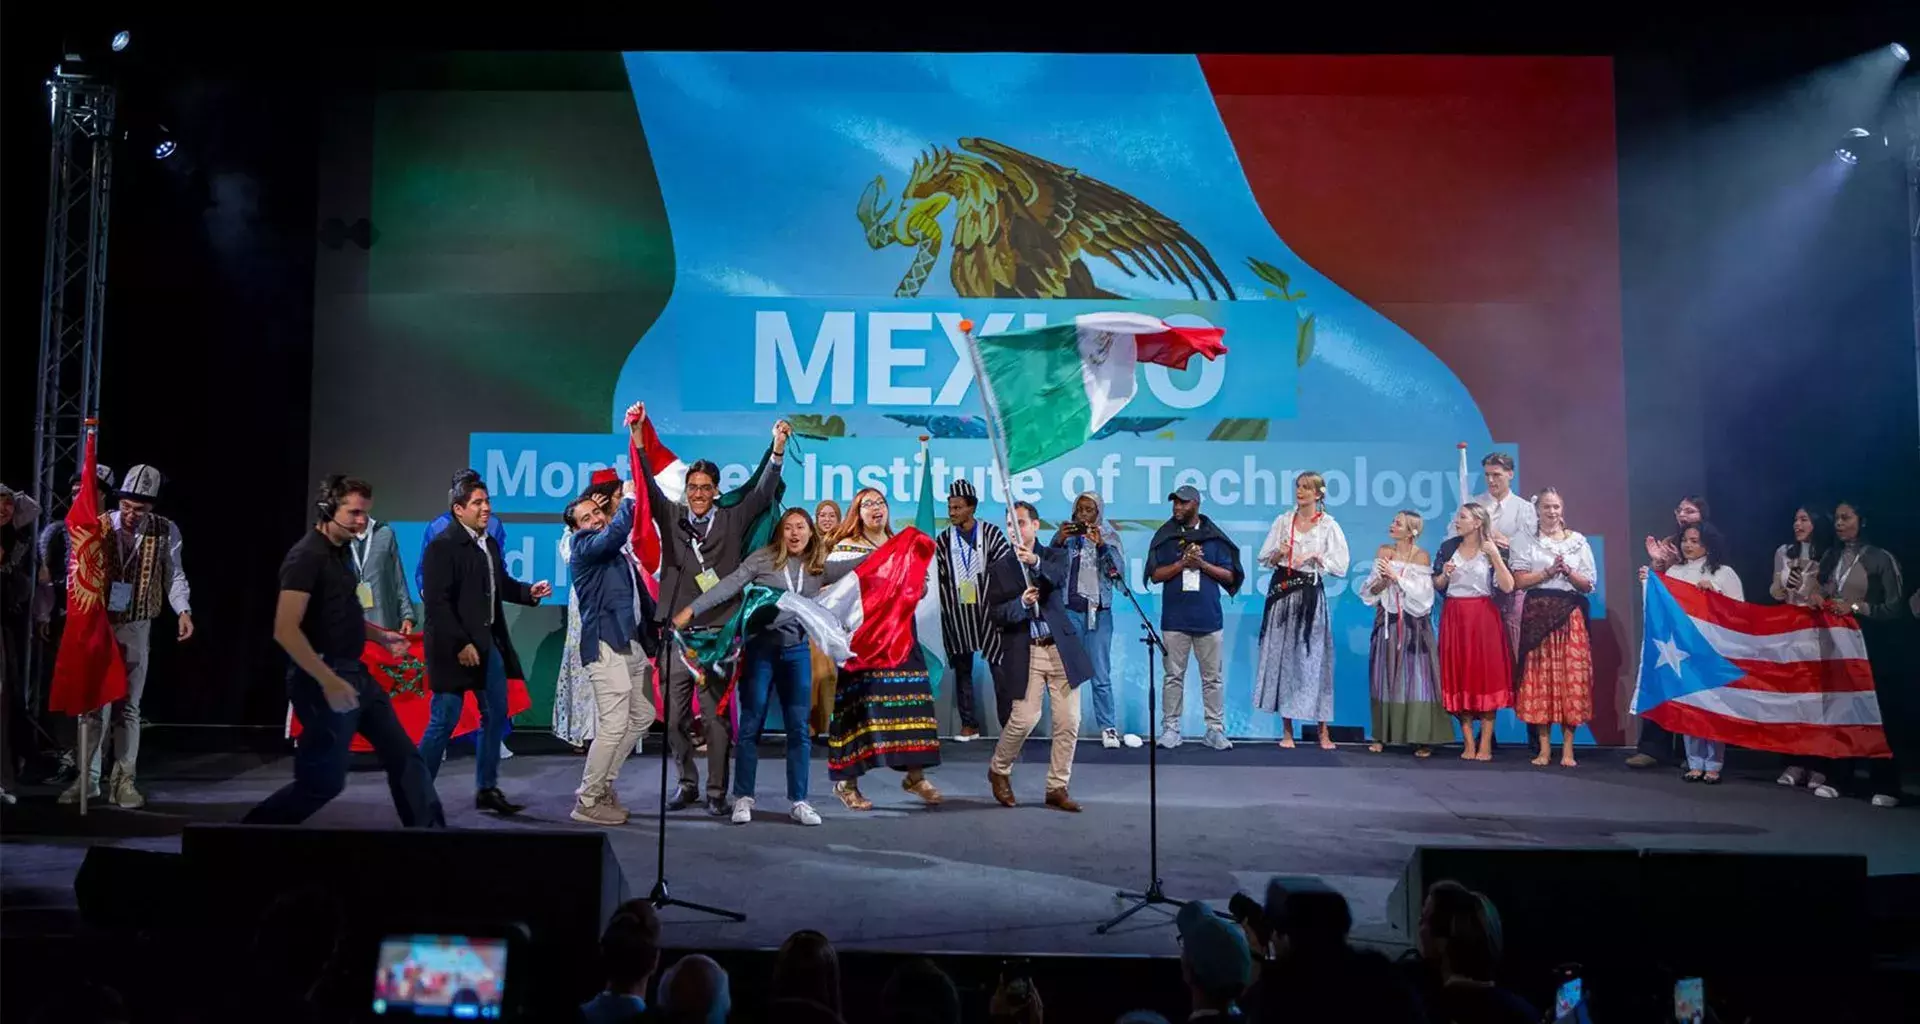 Celal-Mex representó con orgullo a todos los emprendedores mexicanos